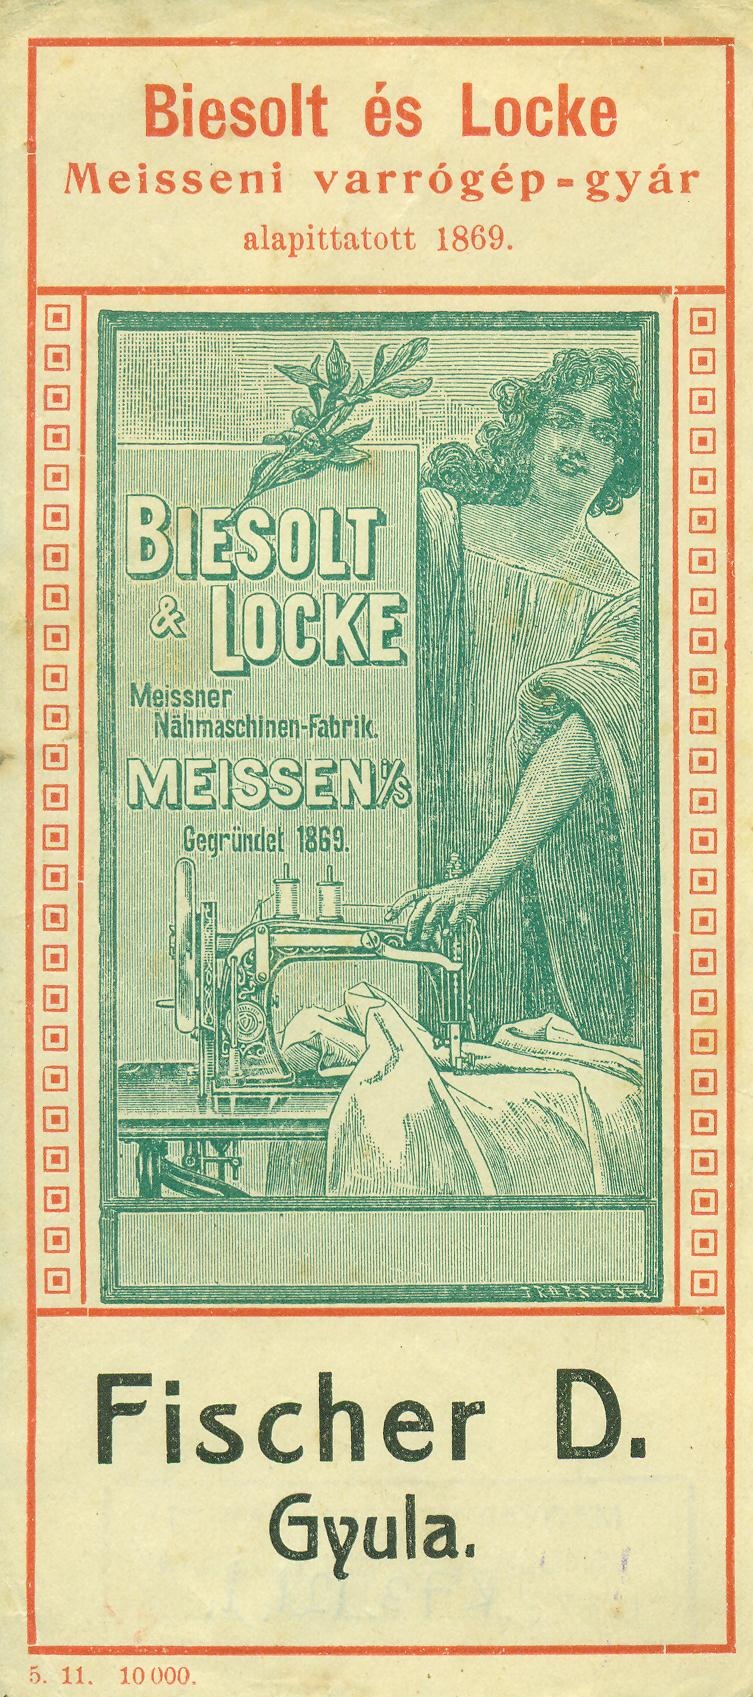 Biesolt és Locke Meisseni varrógép-gyár és Fischer D. Gyula. (Magyar Kereskedelmi és Vendéglátóipari Múzeum CC BY-NC-SA)